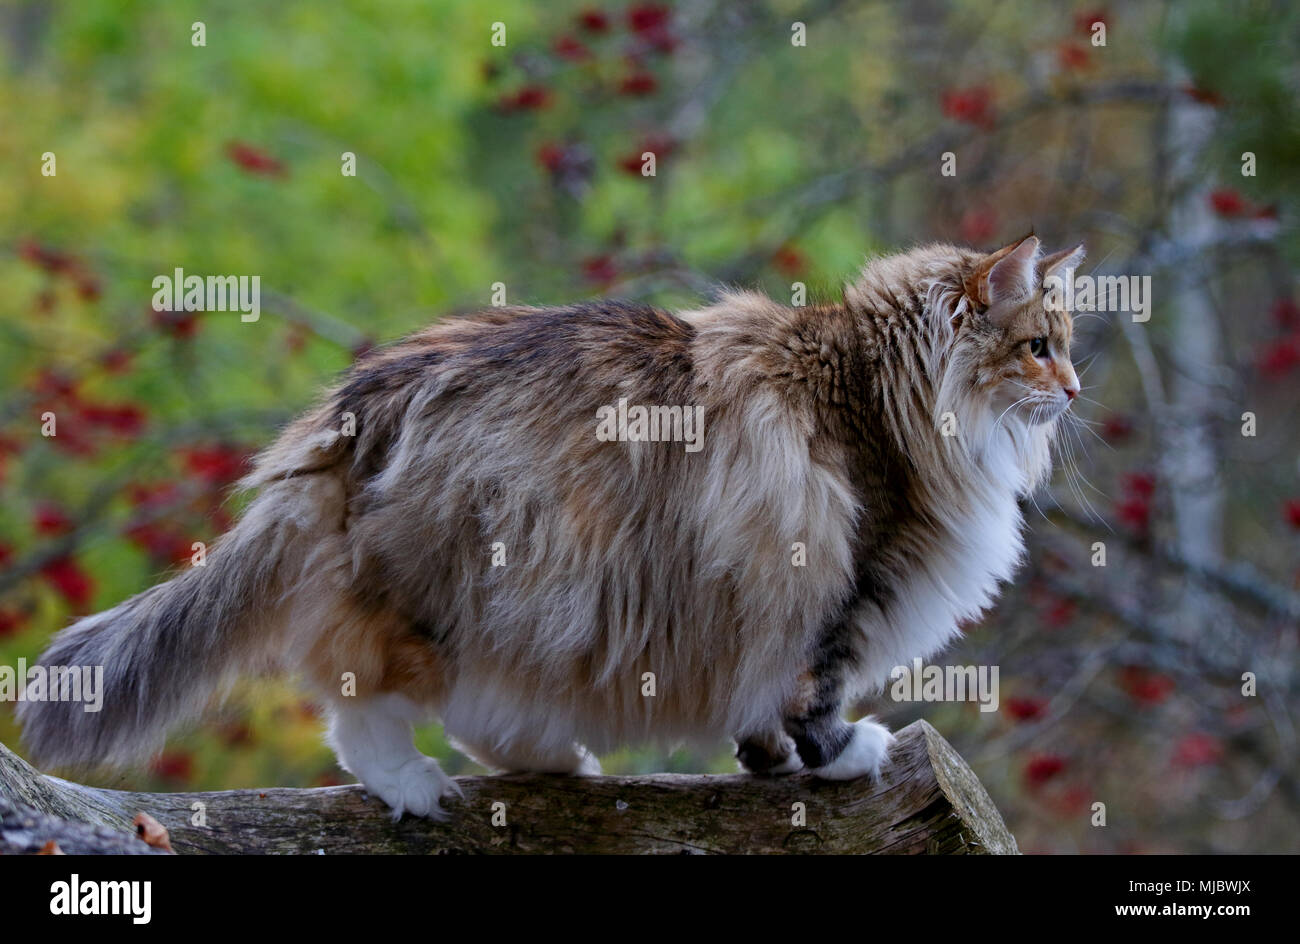 Norwegian forest cat female standing on log Stock Photo